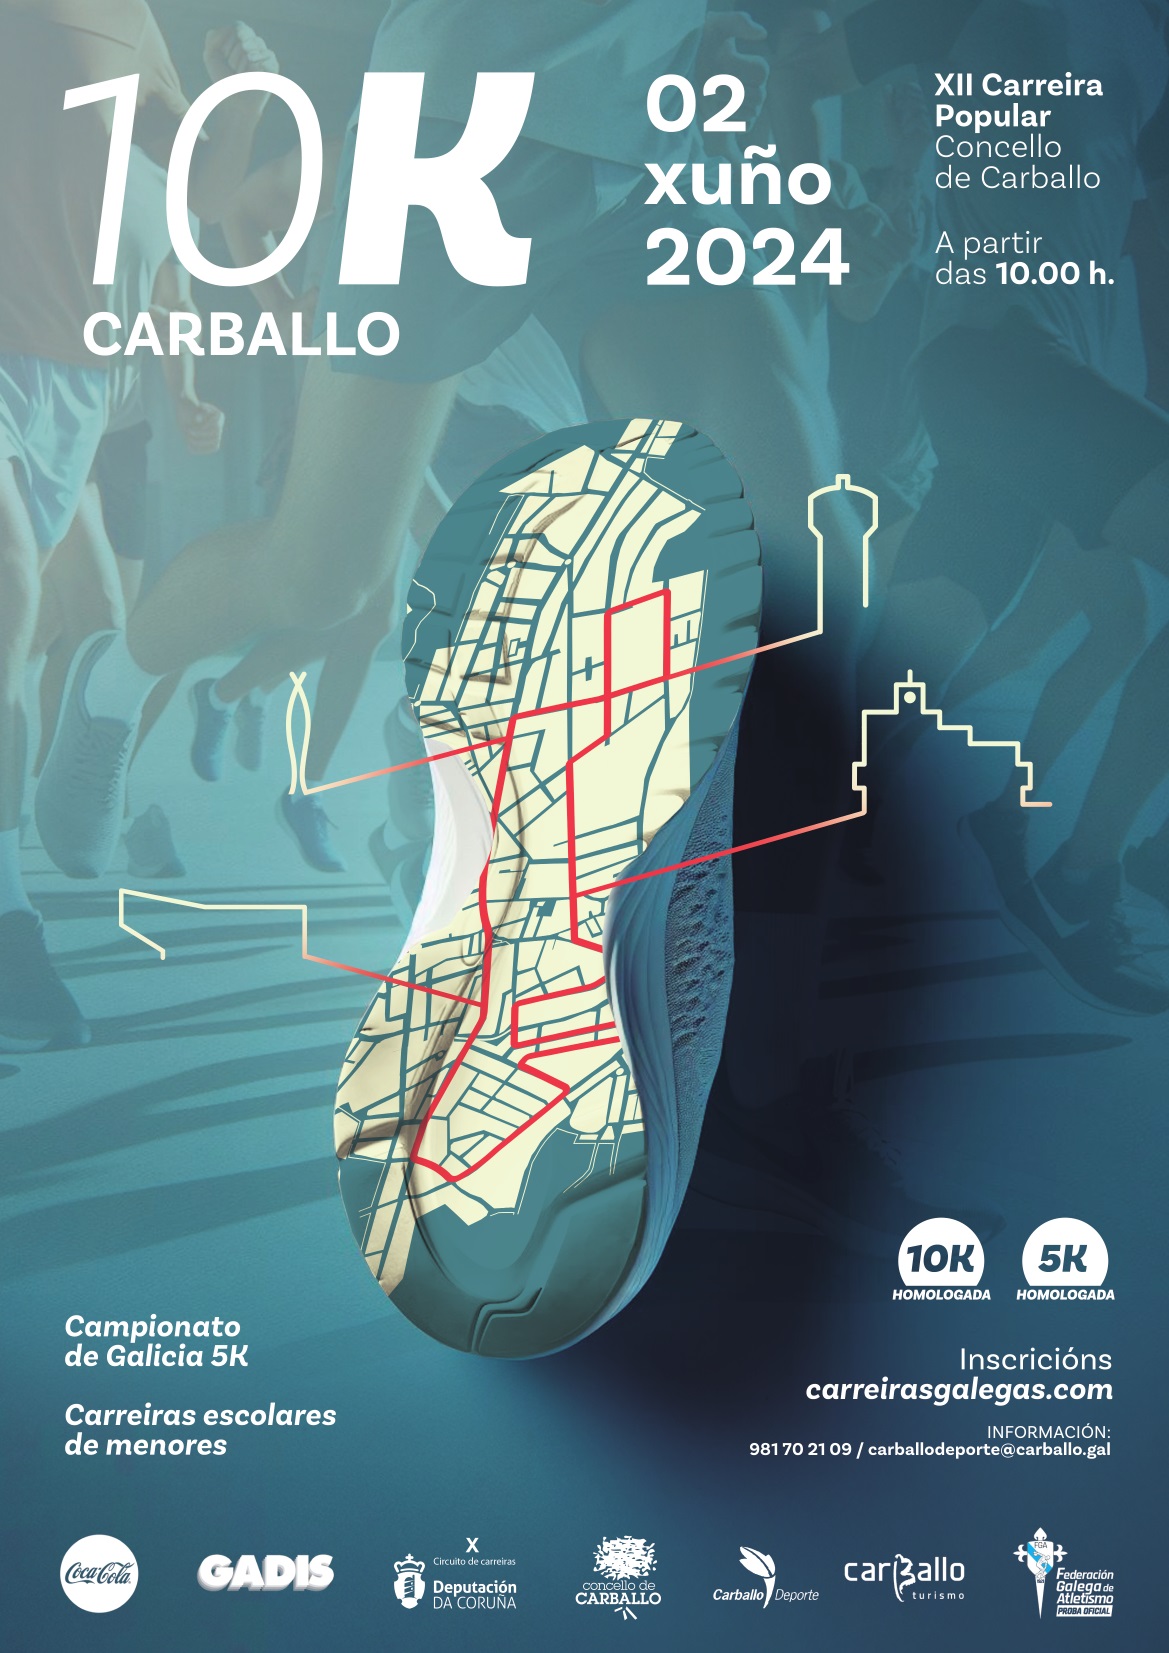 10 Km. de Carballo – XII Carreira Popular Concello Carballo 2024